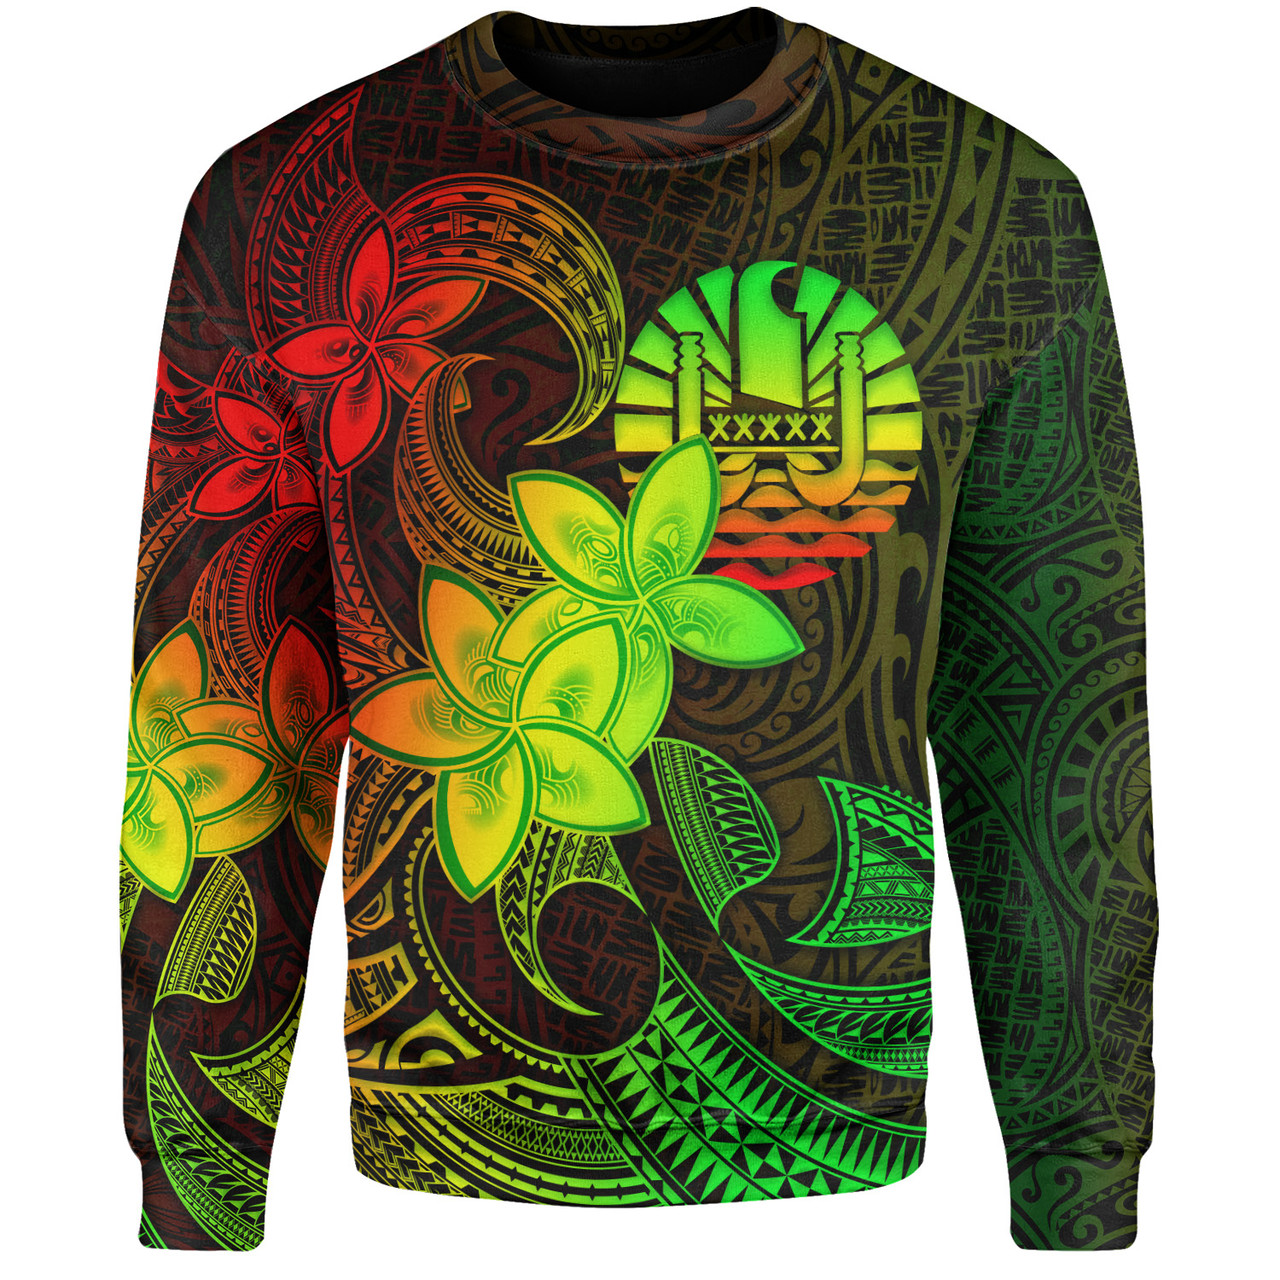 Tahiti Sweatshirt Plumeria Flowers Vintage Style Reggae Colors